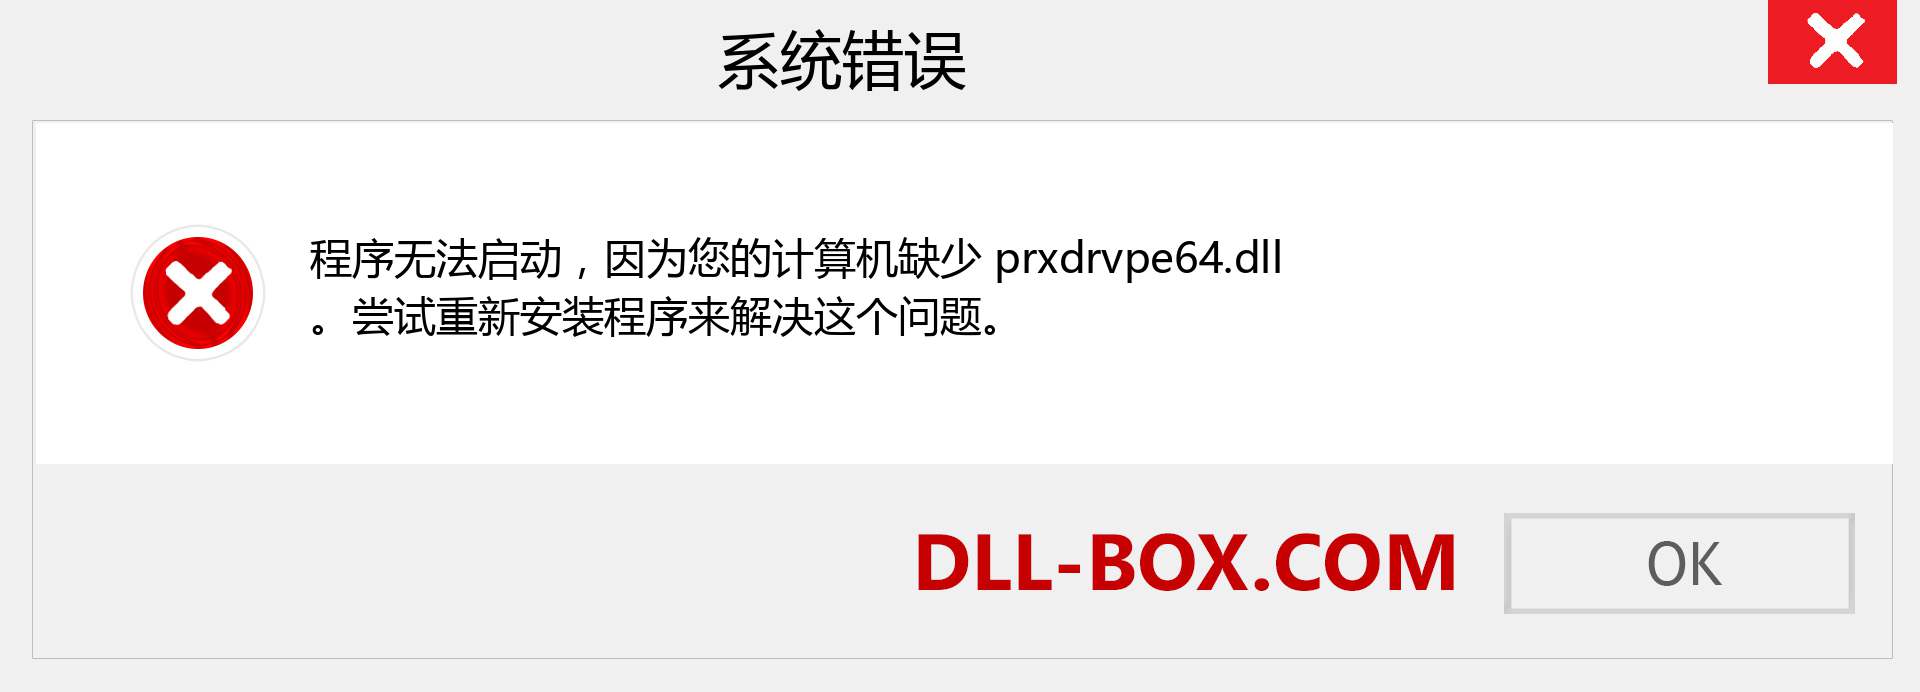 prxdrvpe64.dll 文件丢失？。 适用于 Windows 7、8、10 的下载 - 修复 Windows、照片、图像上的 prxdrvpe64 dll 丢失错误